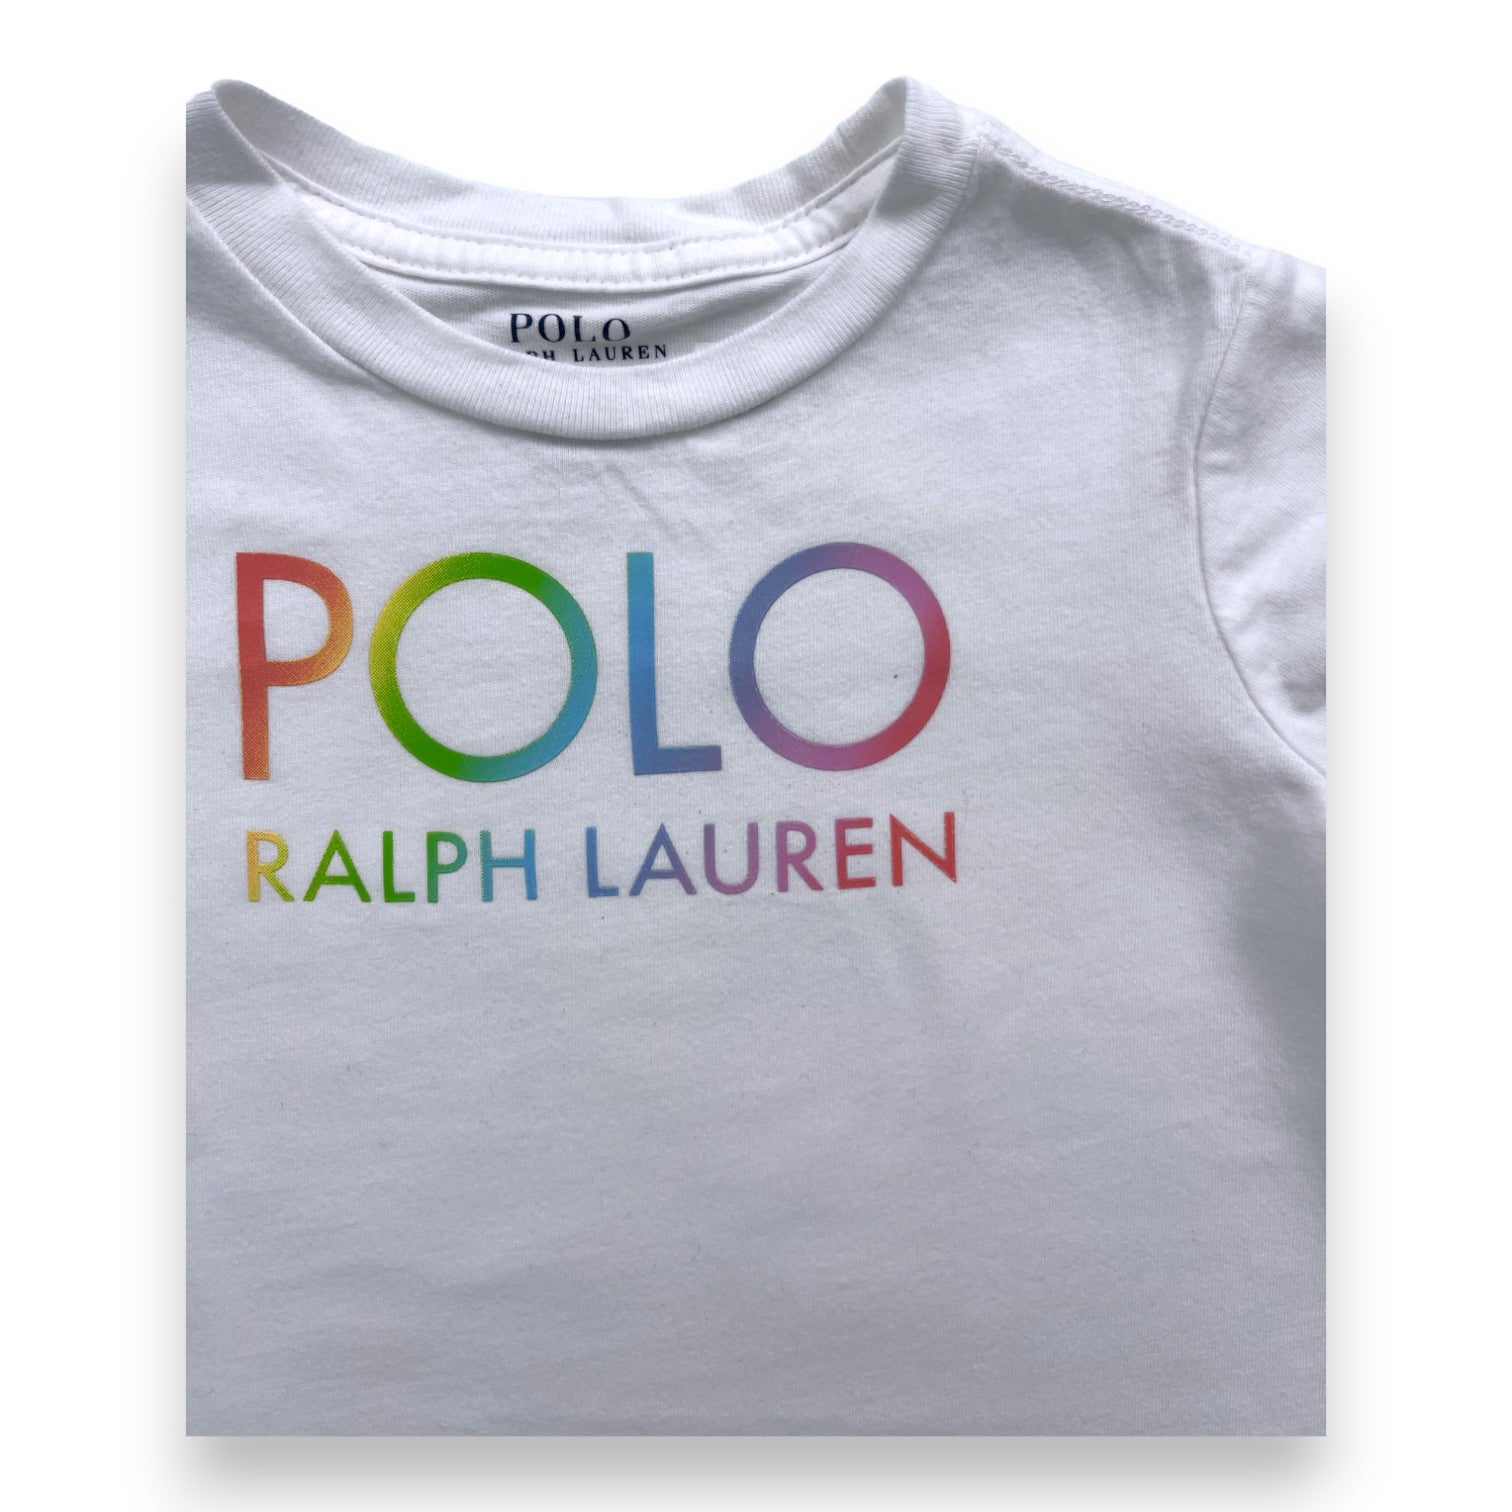 RALPH LAUREN - T shirt blanc manches courtes détails colorés - 2 ans